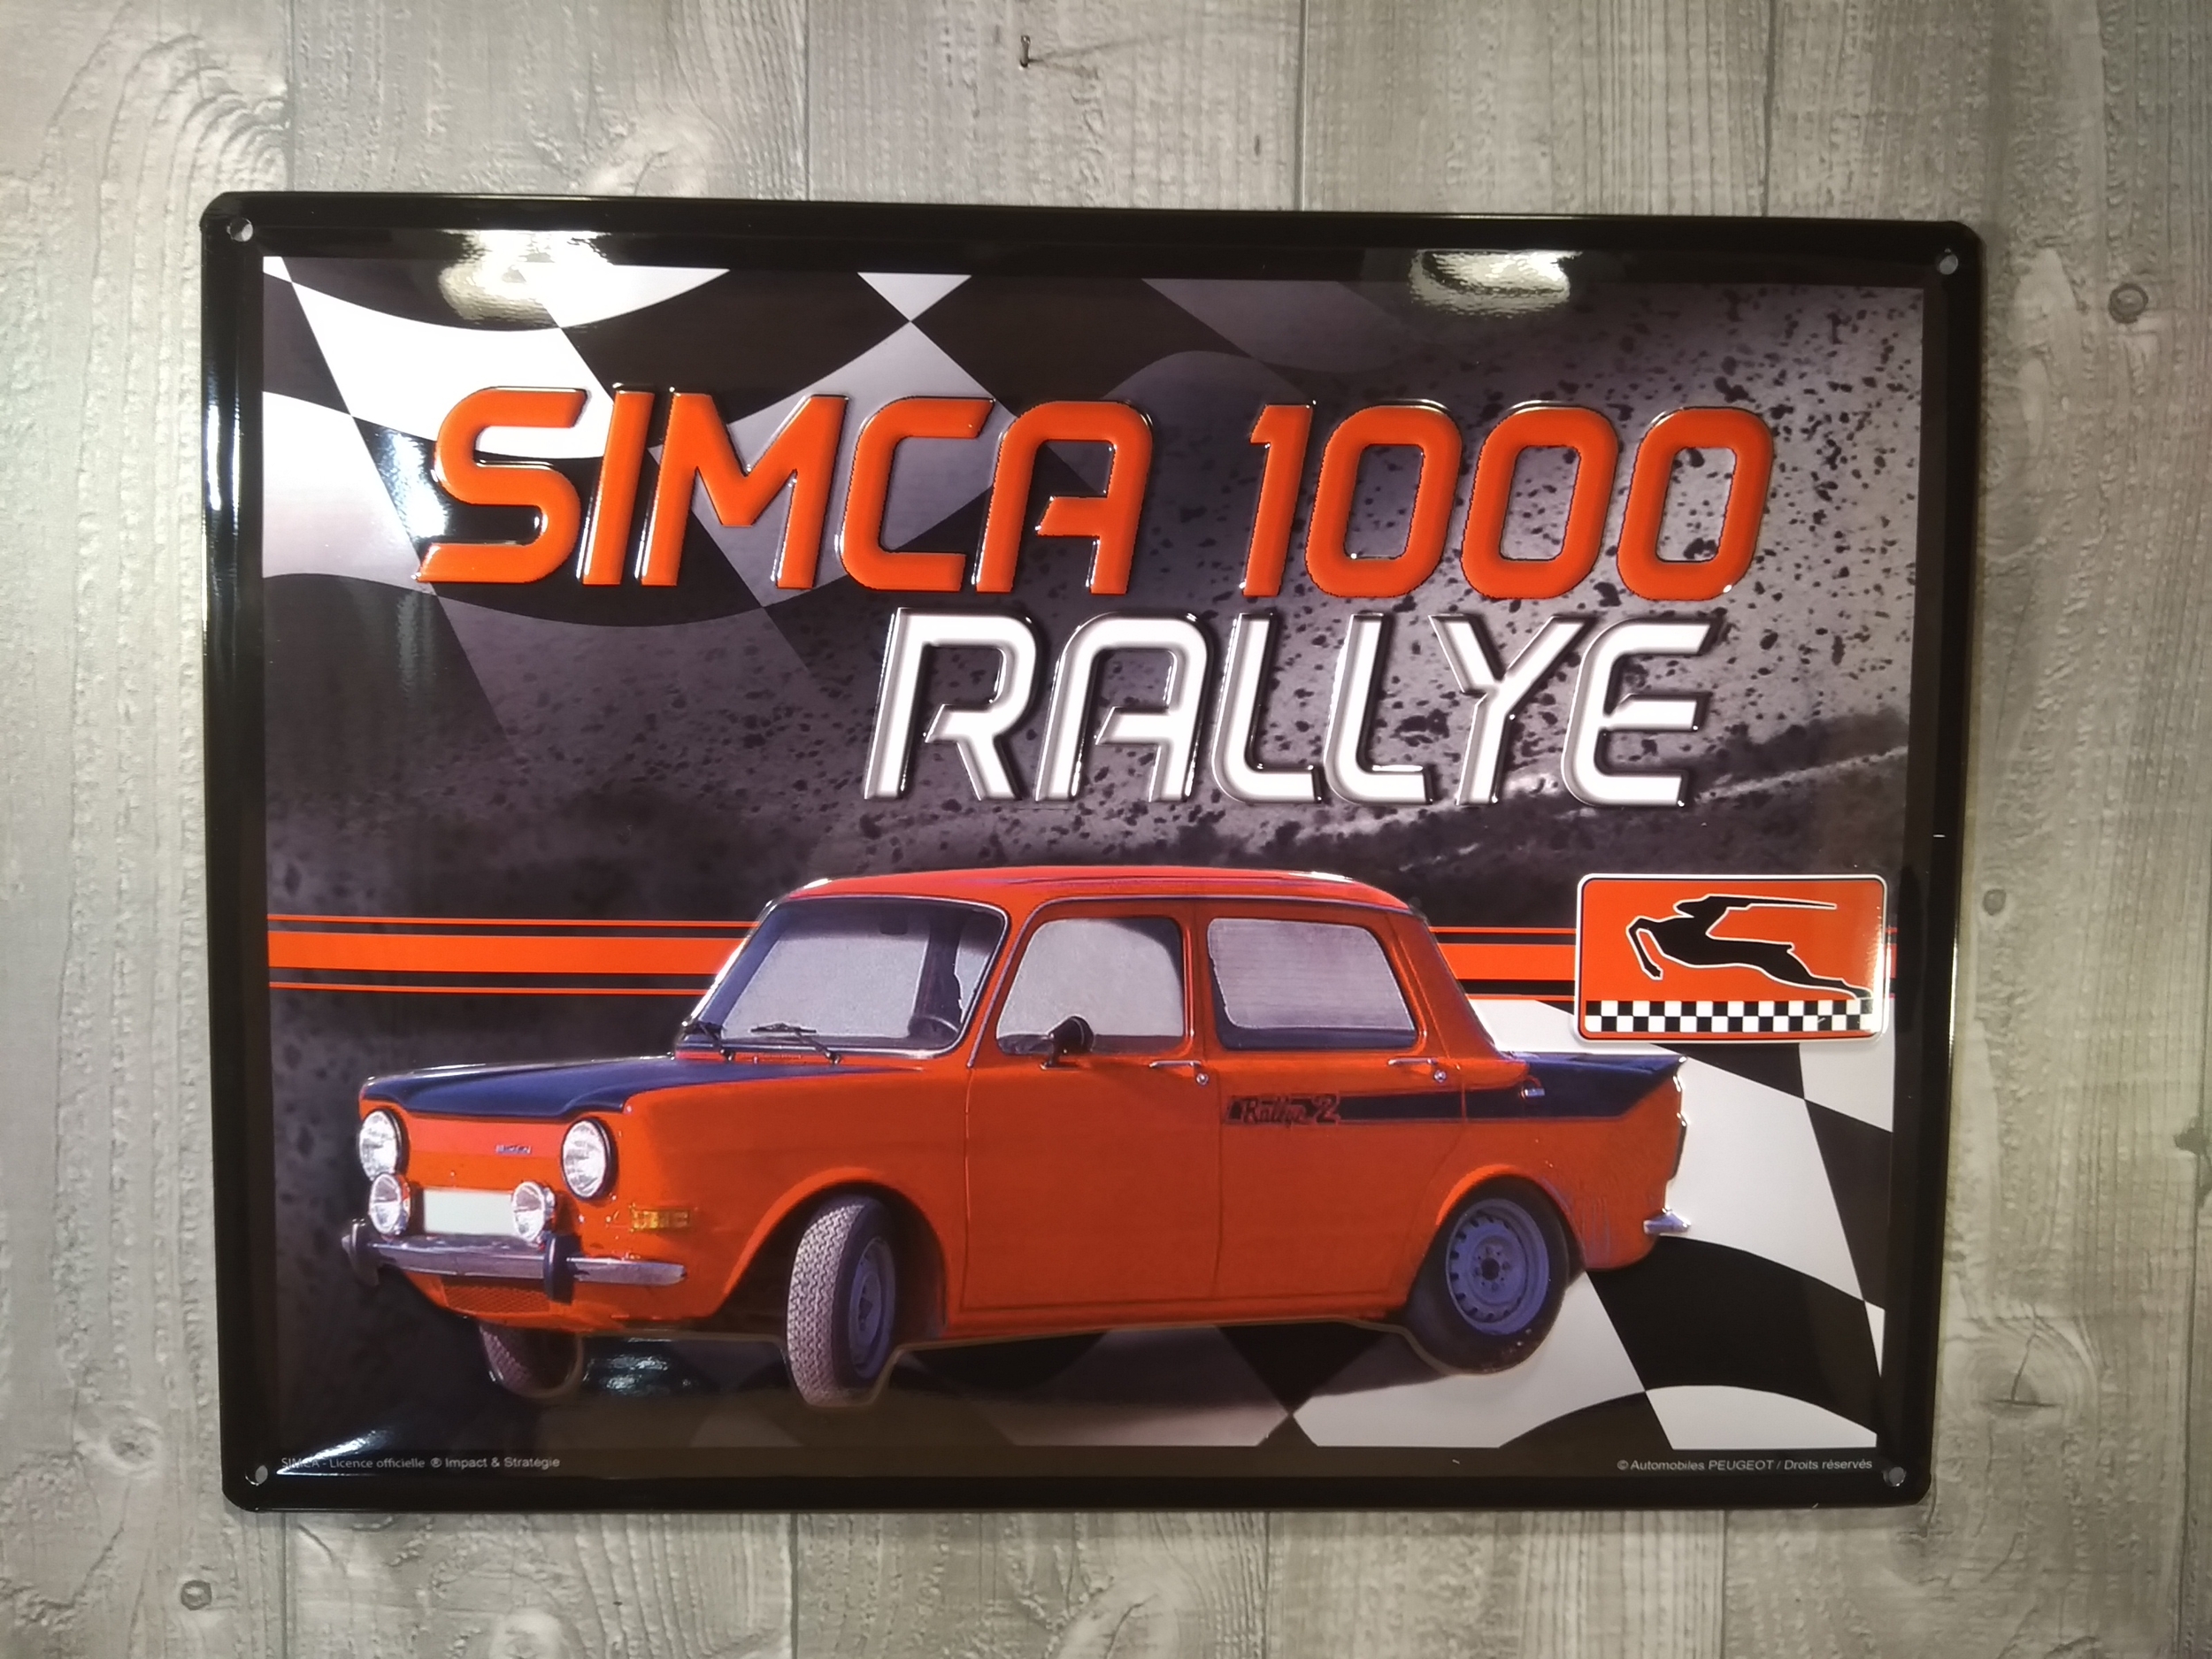 Mes produits (1) - Simca 1000 rallye 2